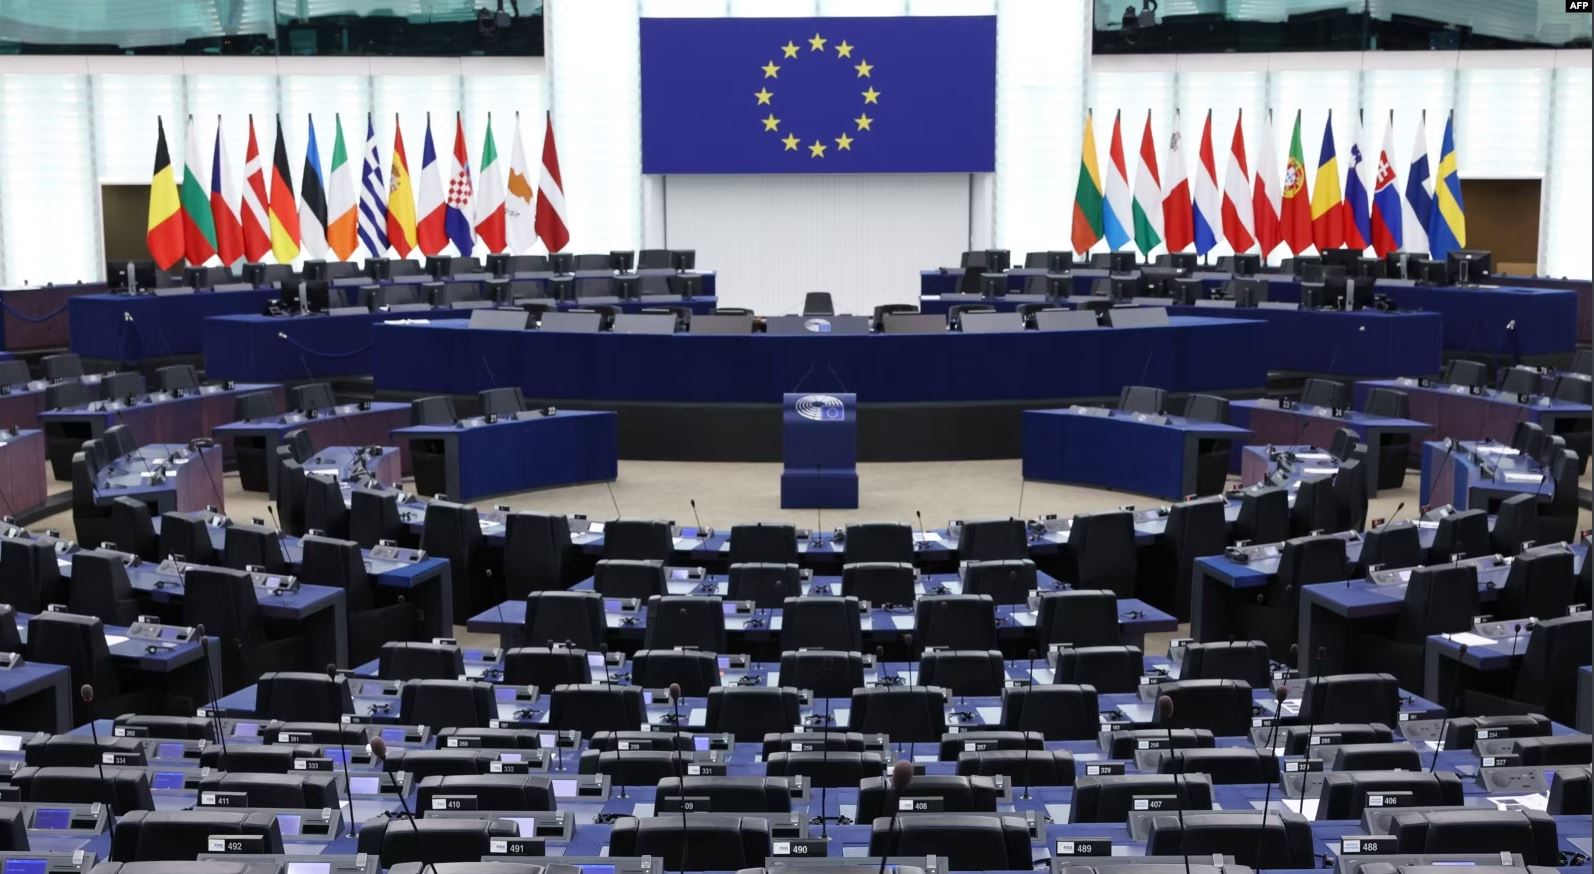 Parlamenti Evropian do të debatojë për parregullsitë e raportuara zgjedhore në Serbi